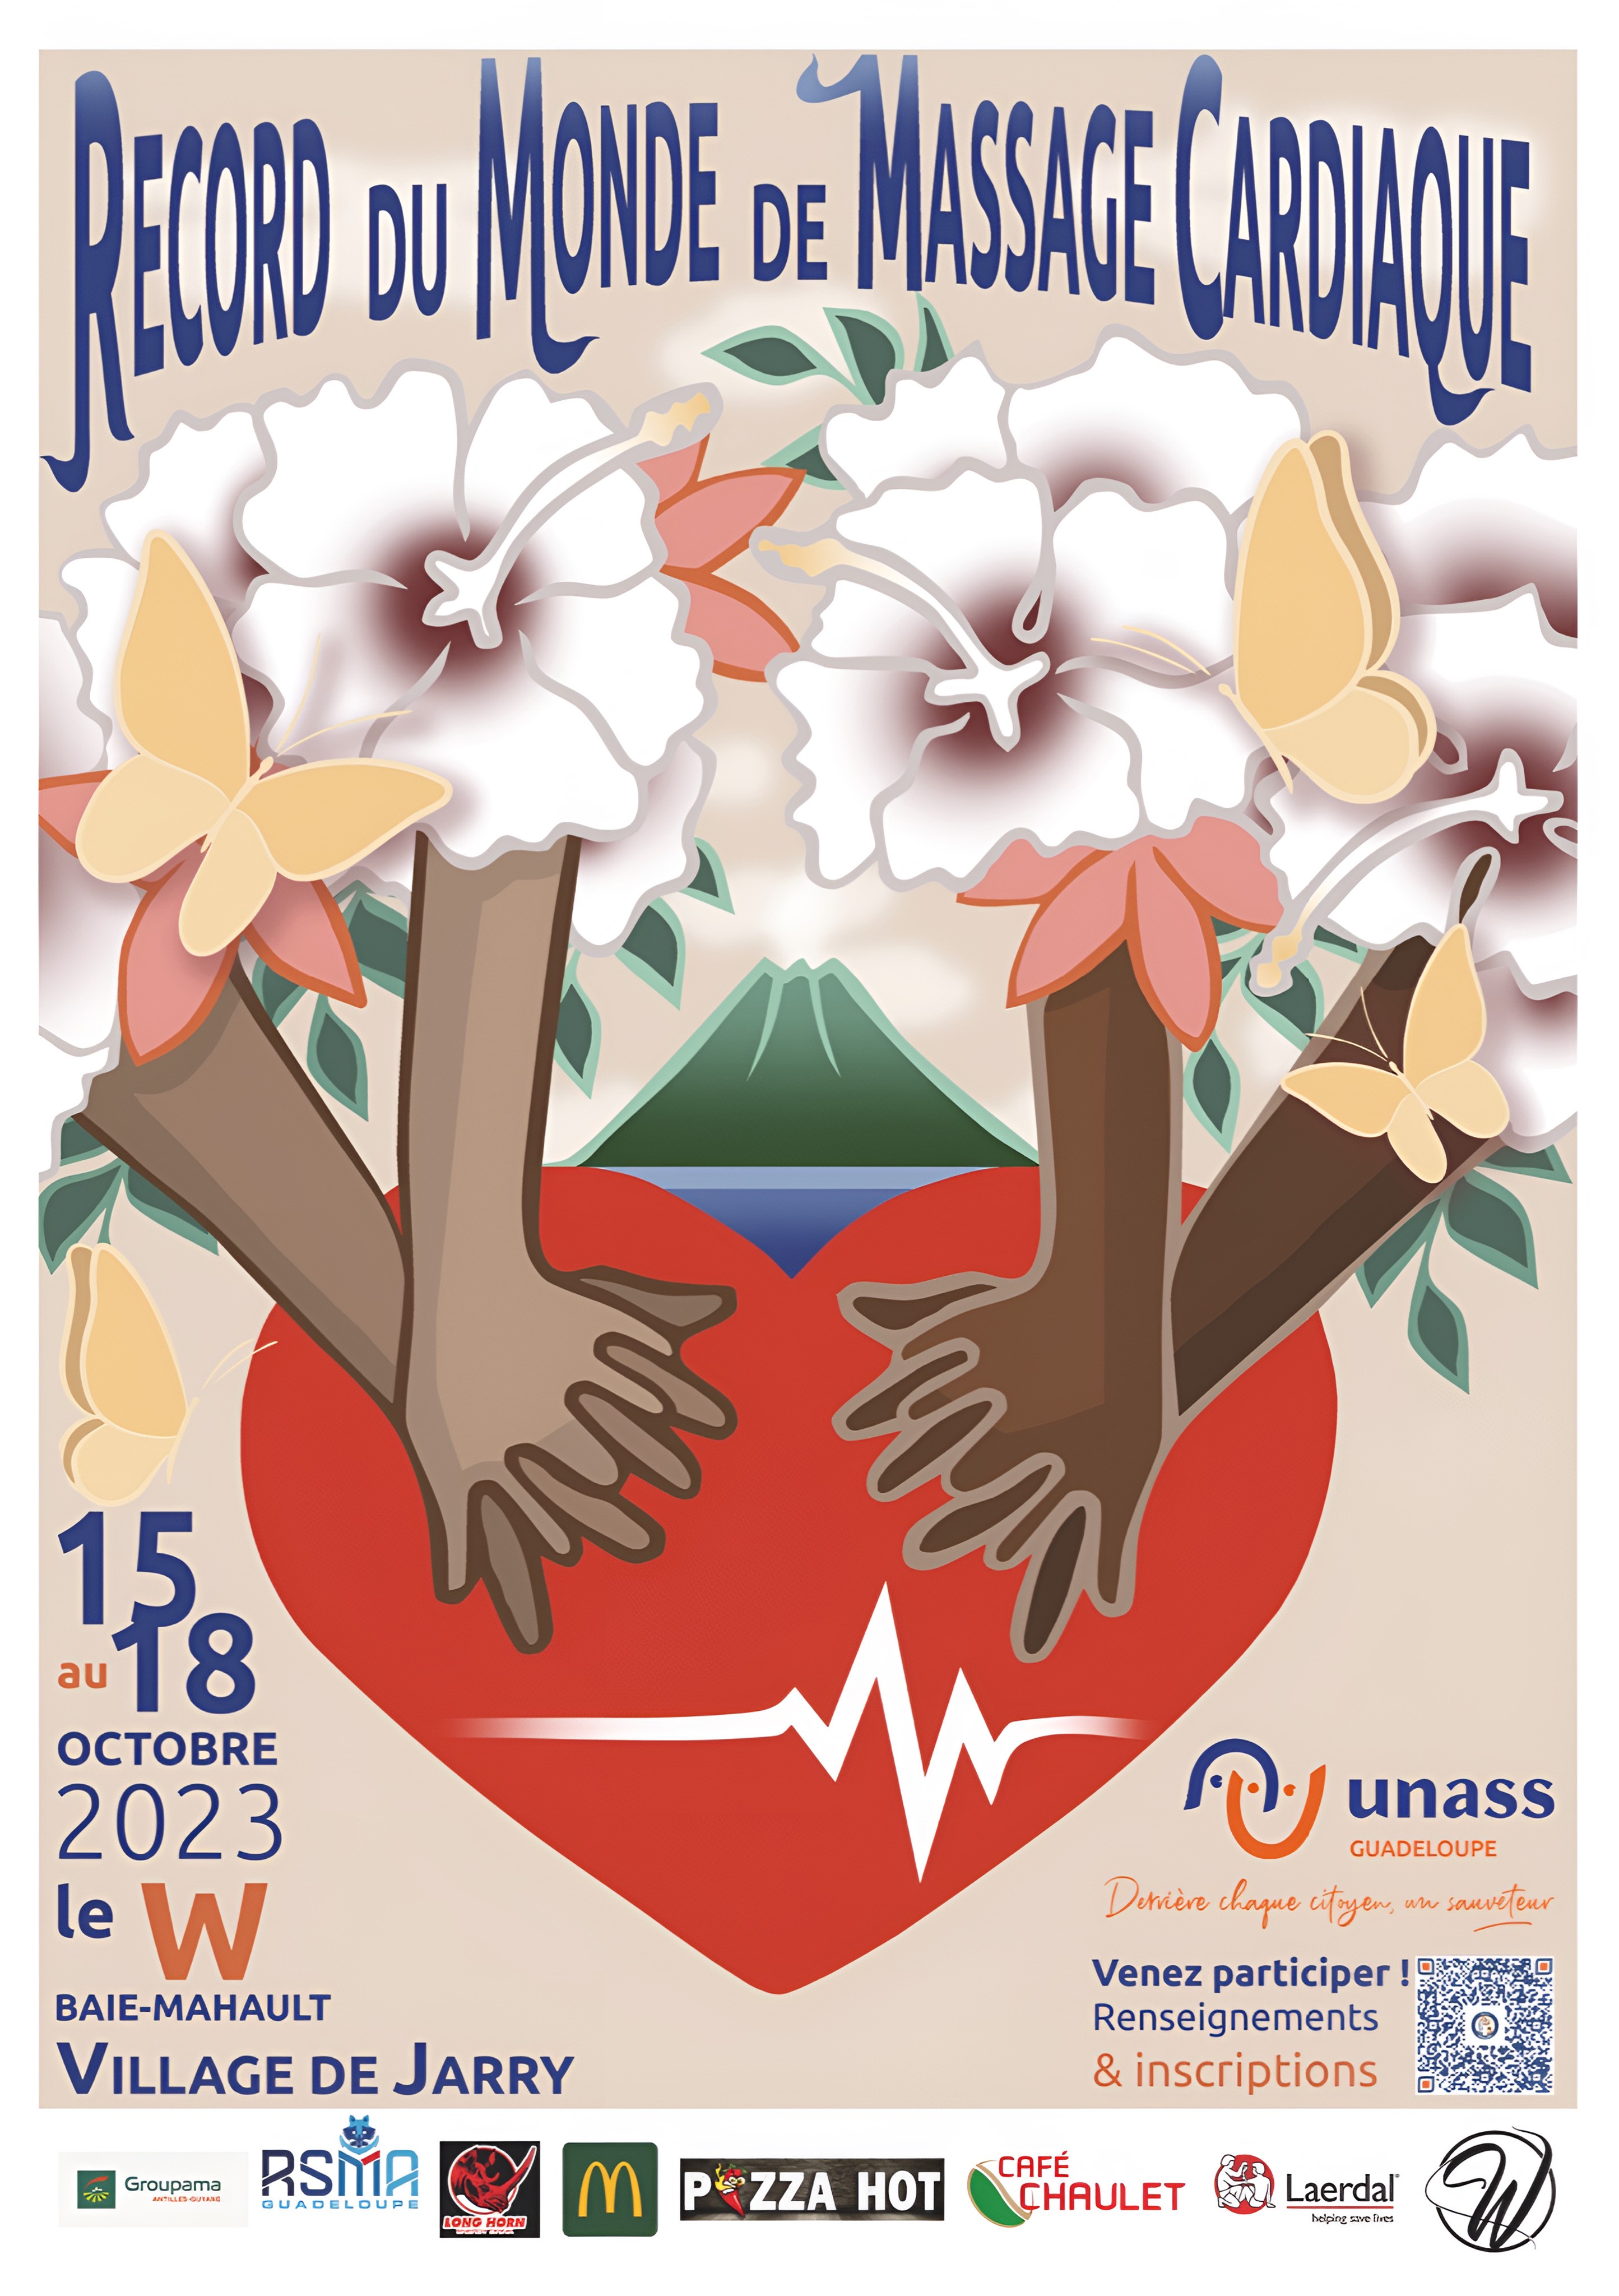 Record du Monde du Massage Cardiaque avec l'UNASS Guadeloupe